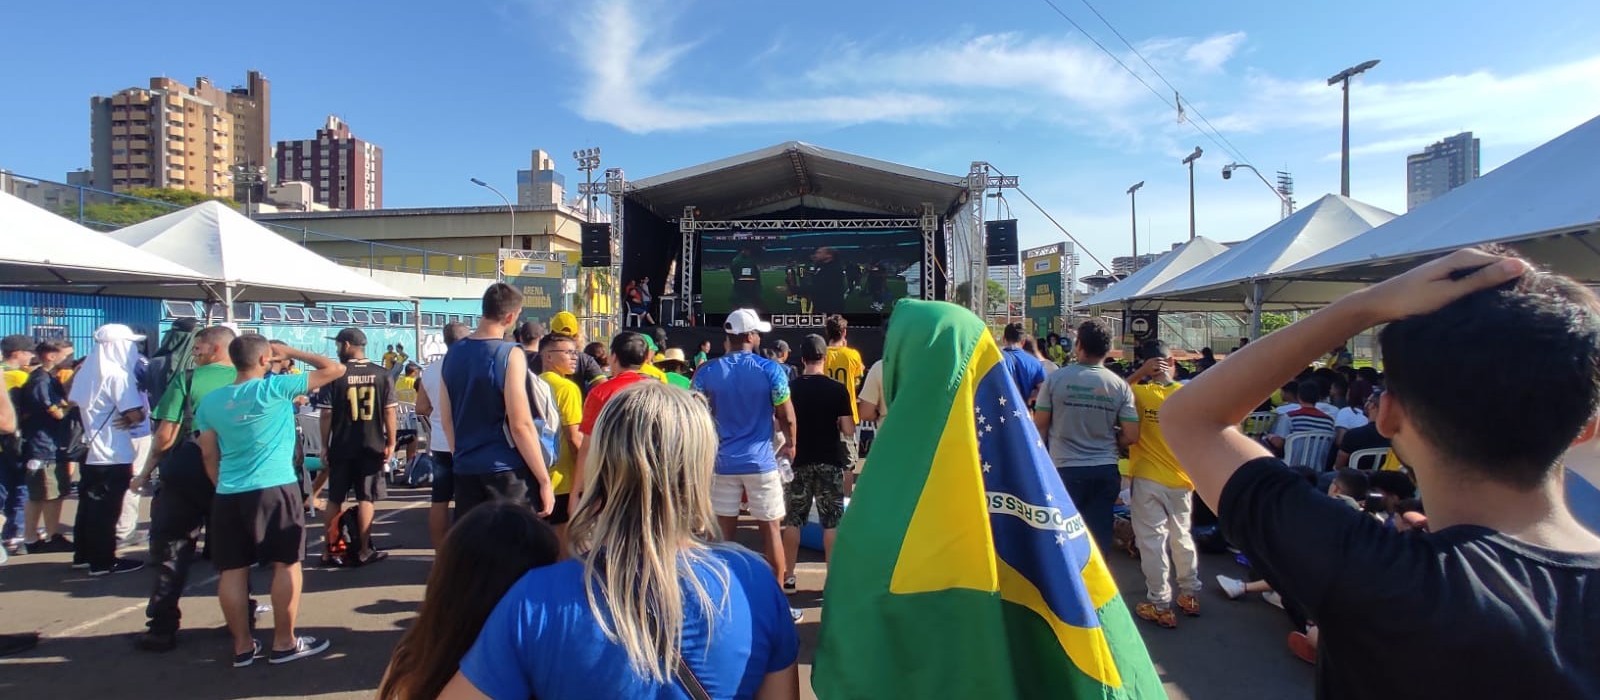 Sob forte calor, Vila Olímpica ficou lotada para jogo do Brasil